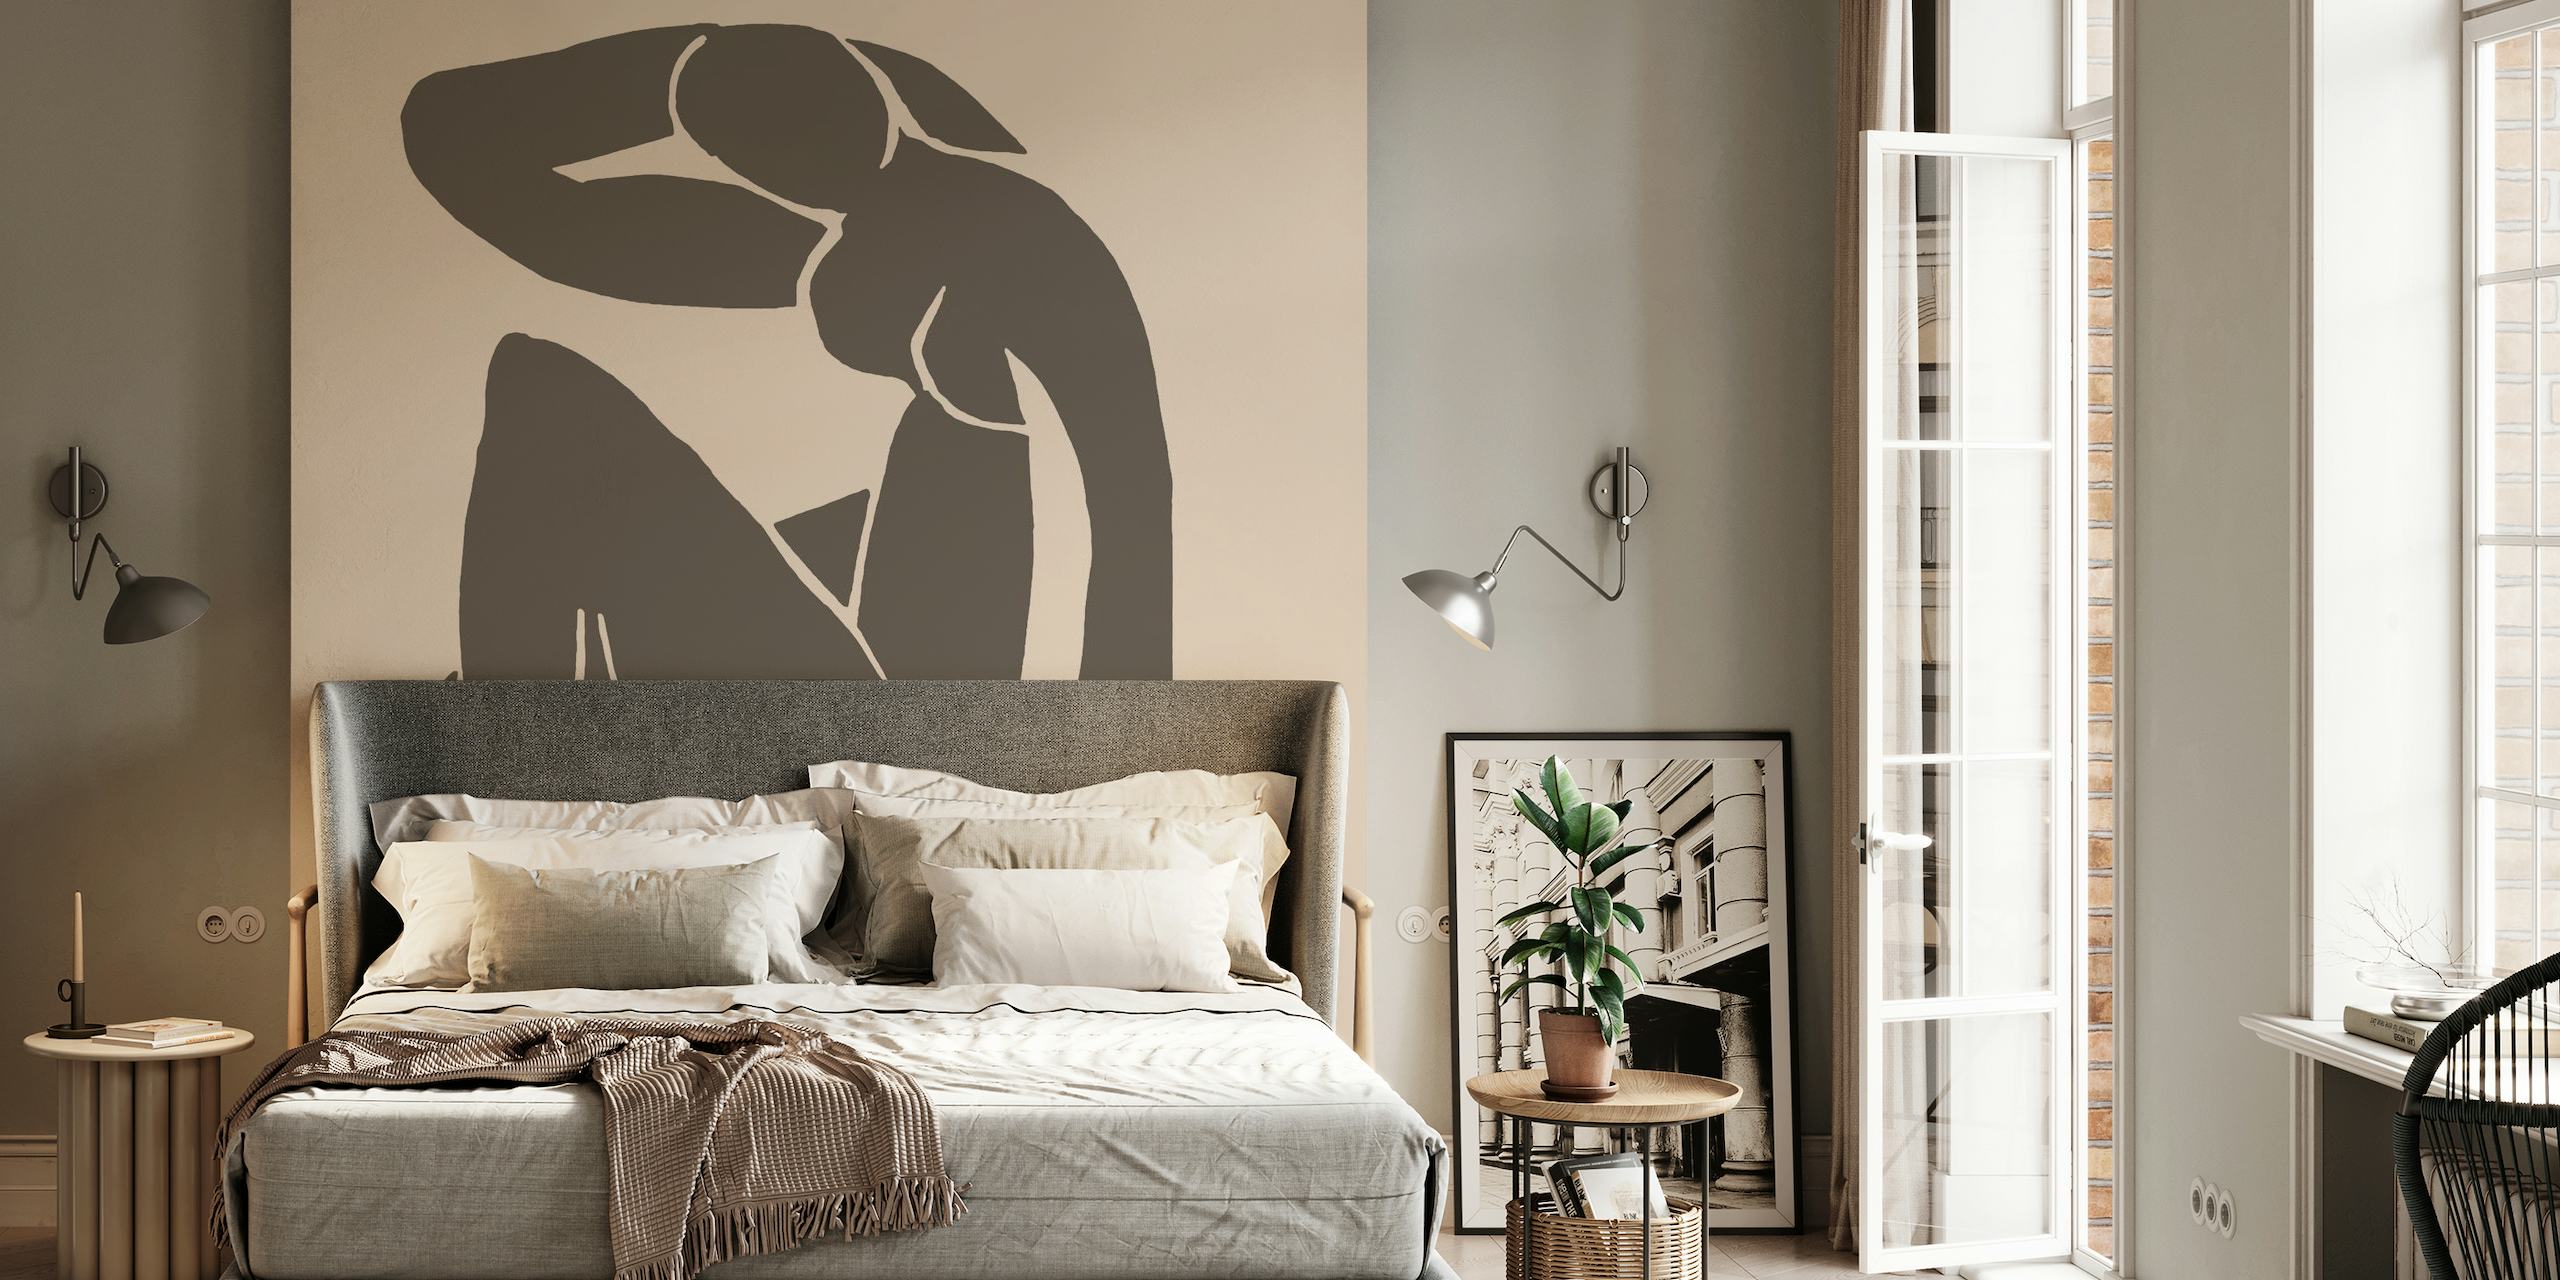 Beige Naken siluetttapet inspirerad av Matisses minimalistiska stil